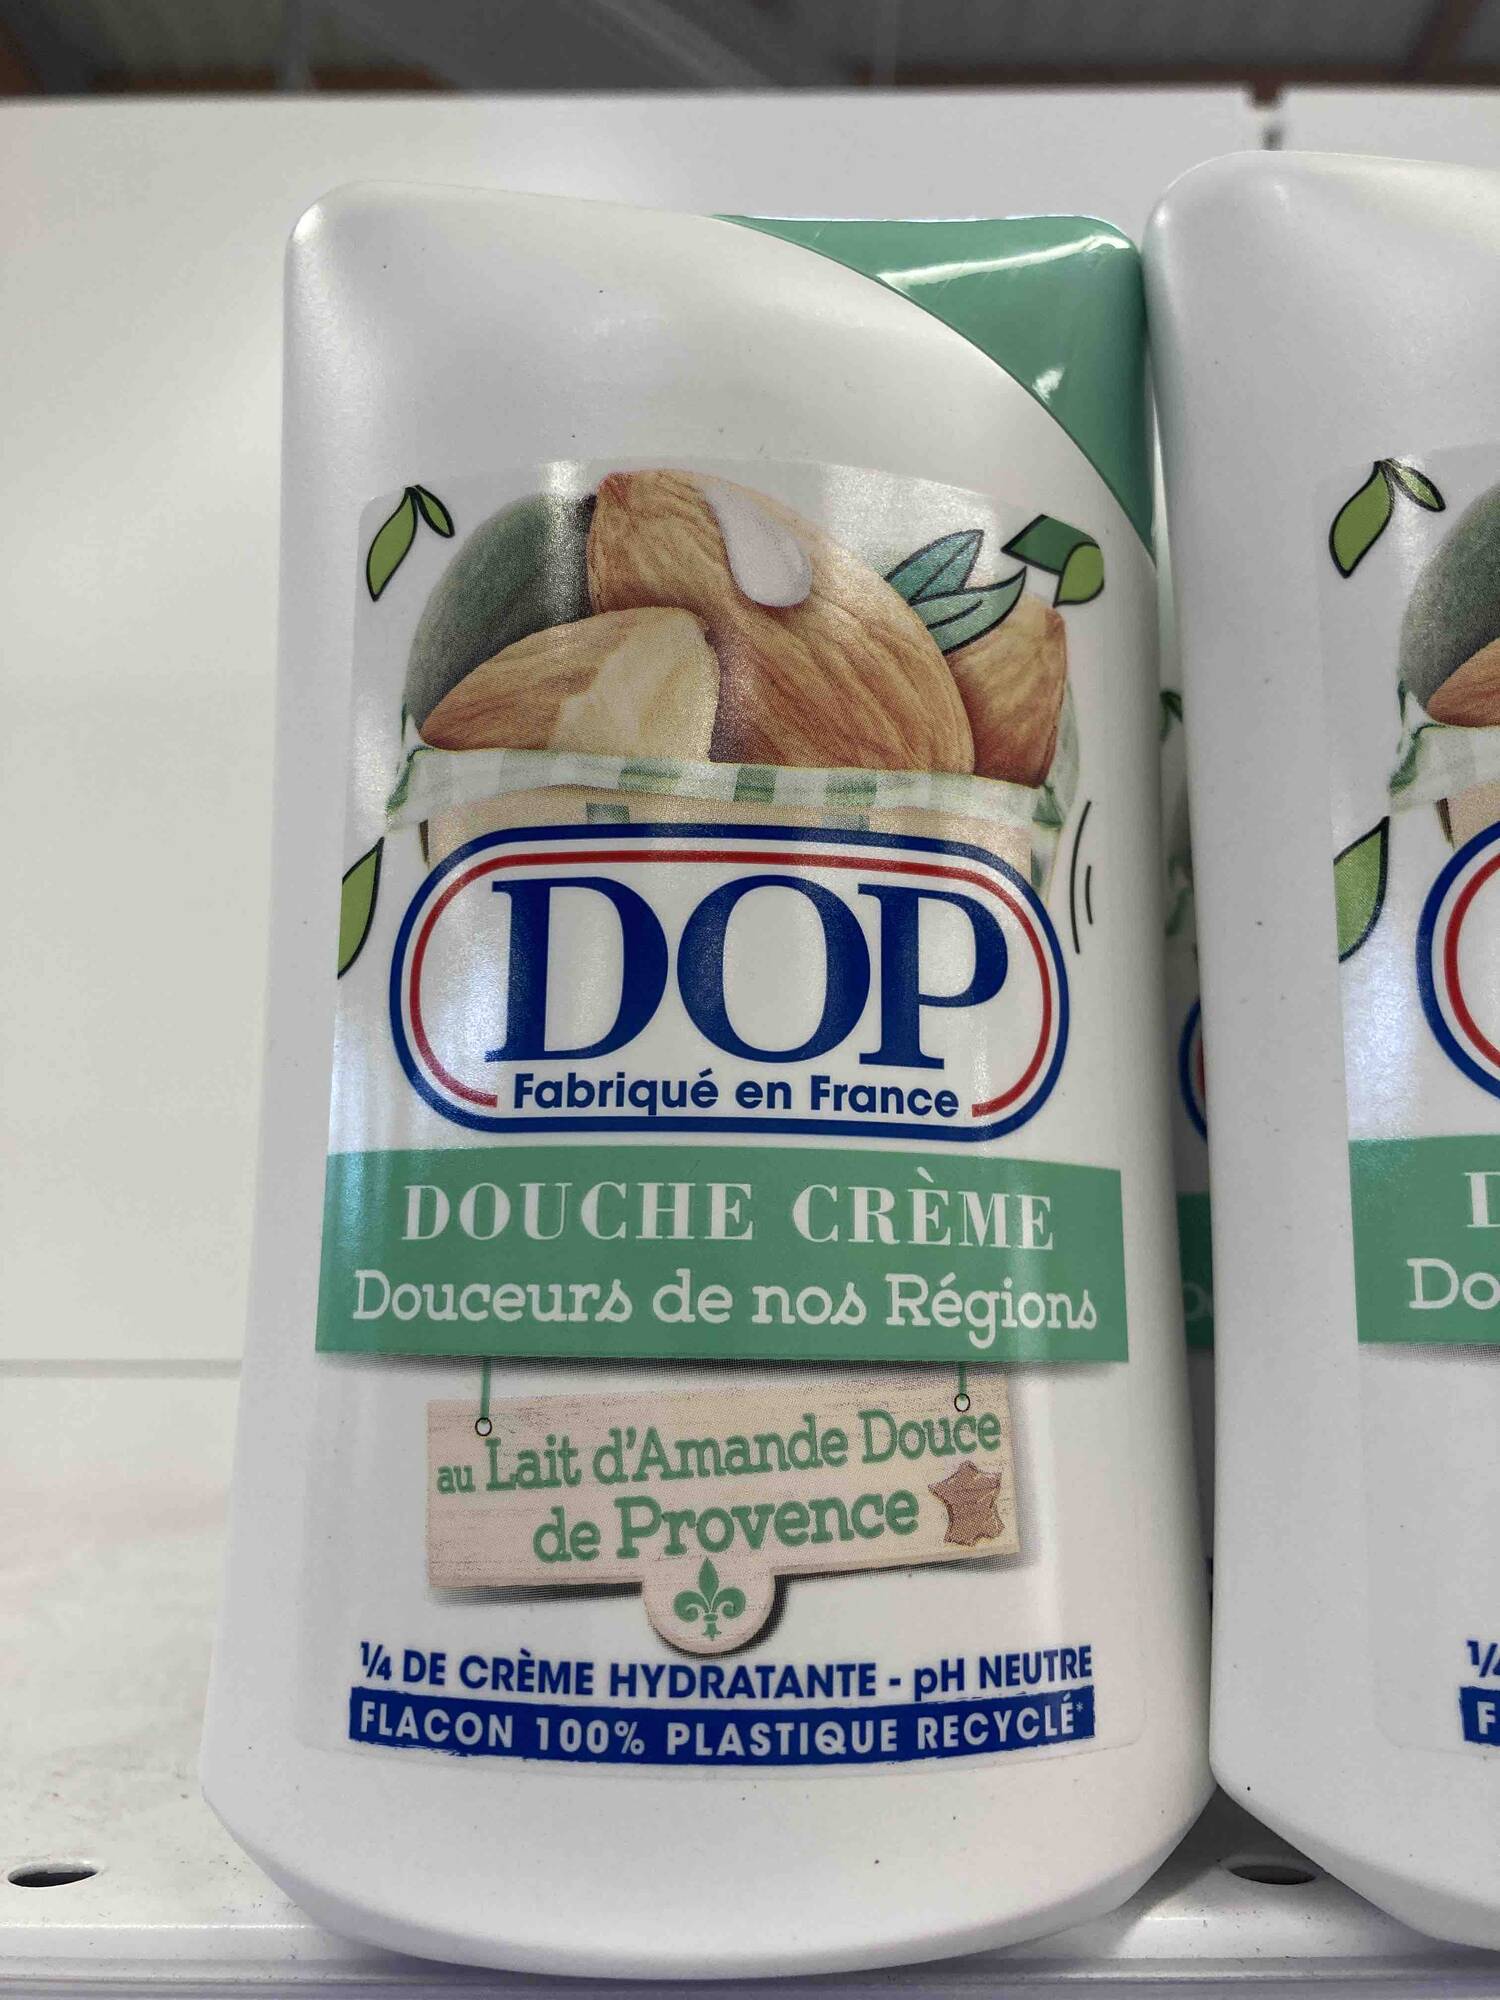 DOP - Douche crème au Lait d'Amande douce de Provence